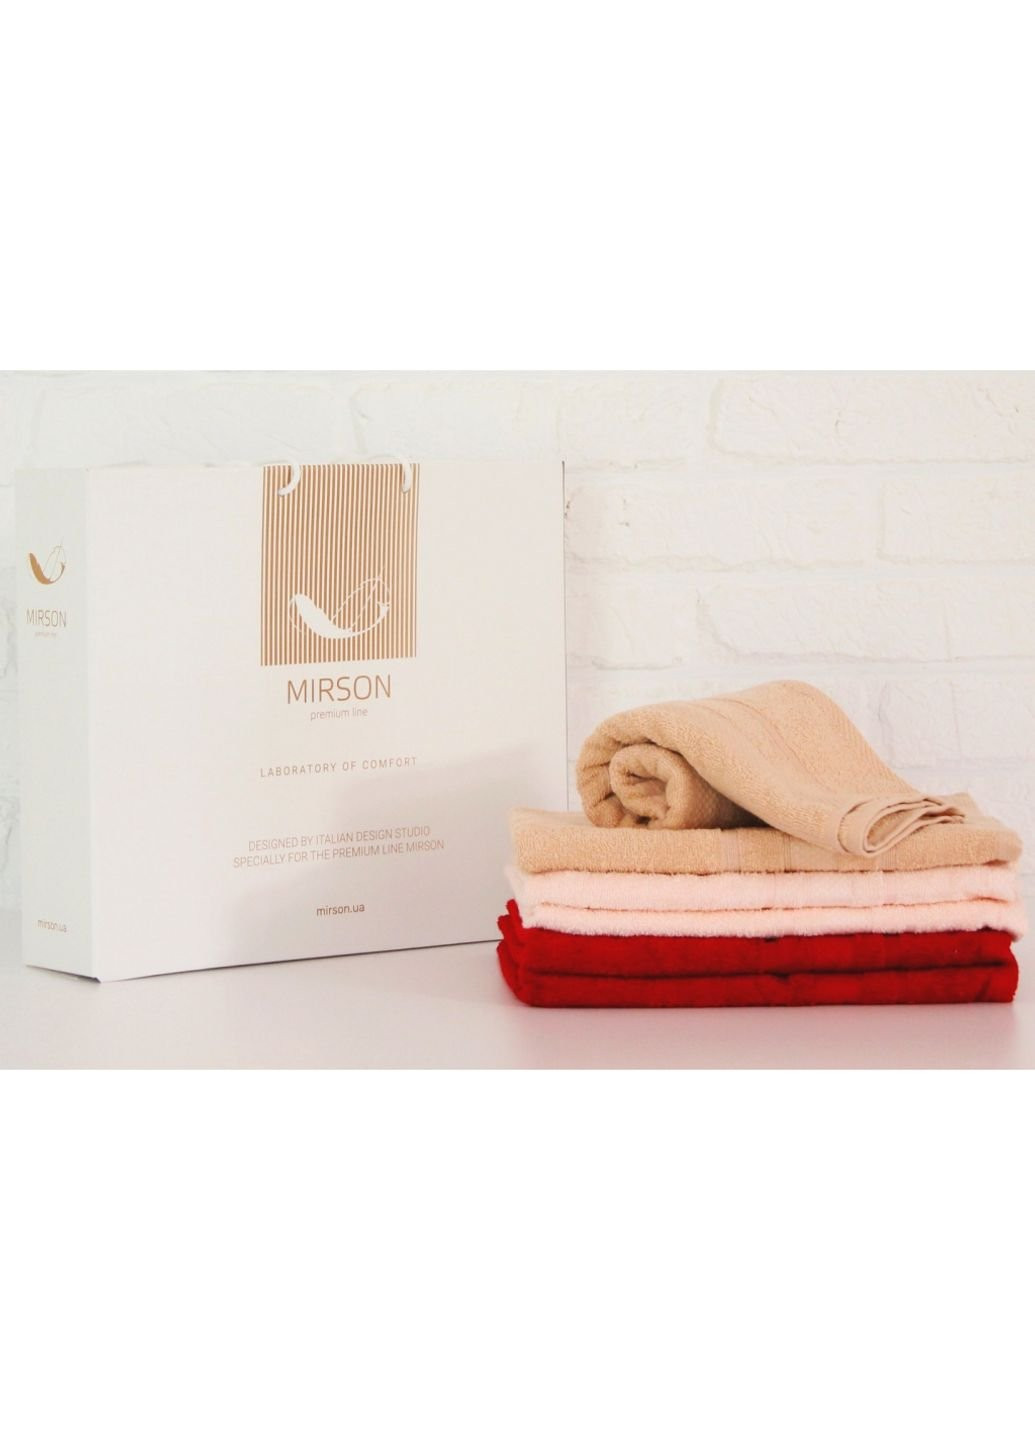 No Brand полотенце mirson набор банных №5099 elite softnes marvelous 50х90 6 шт (2200003525465) комбинированный производство - Украина